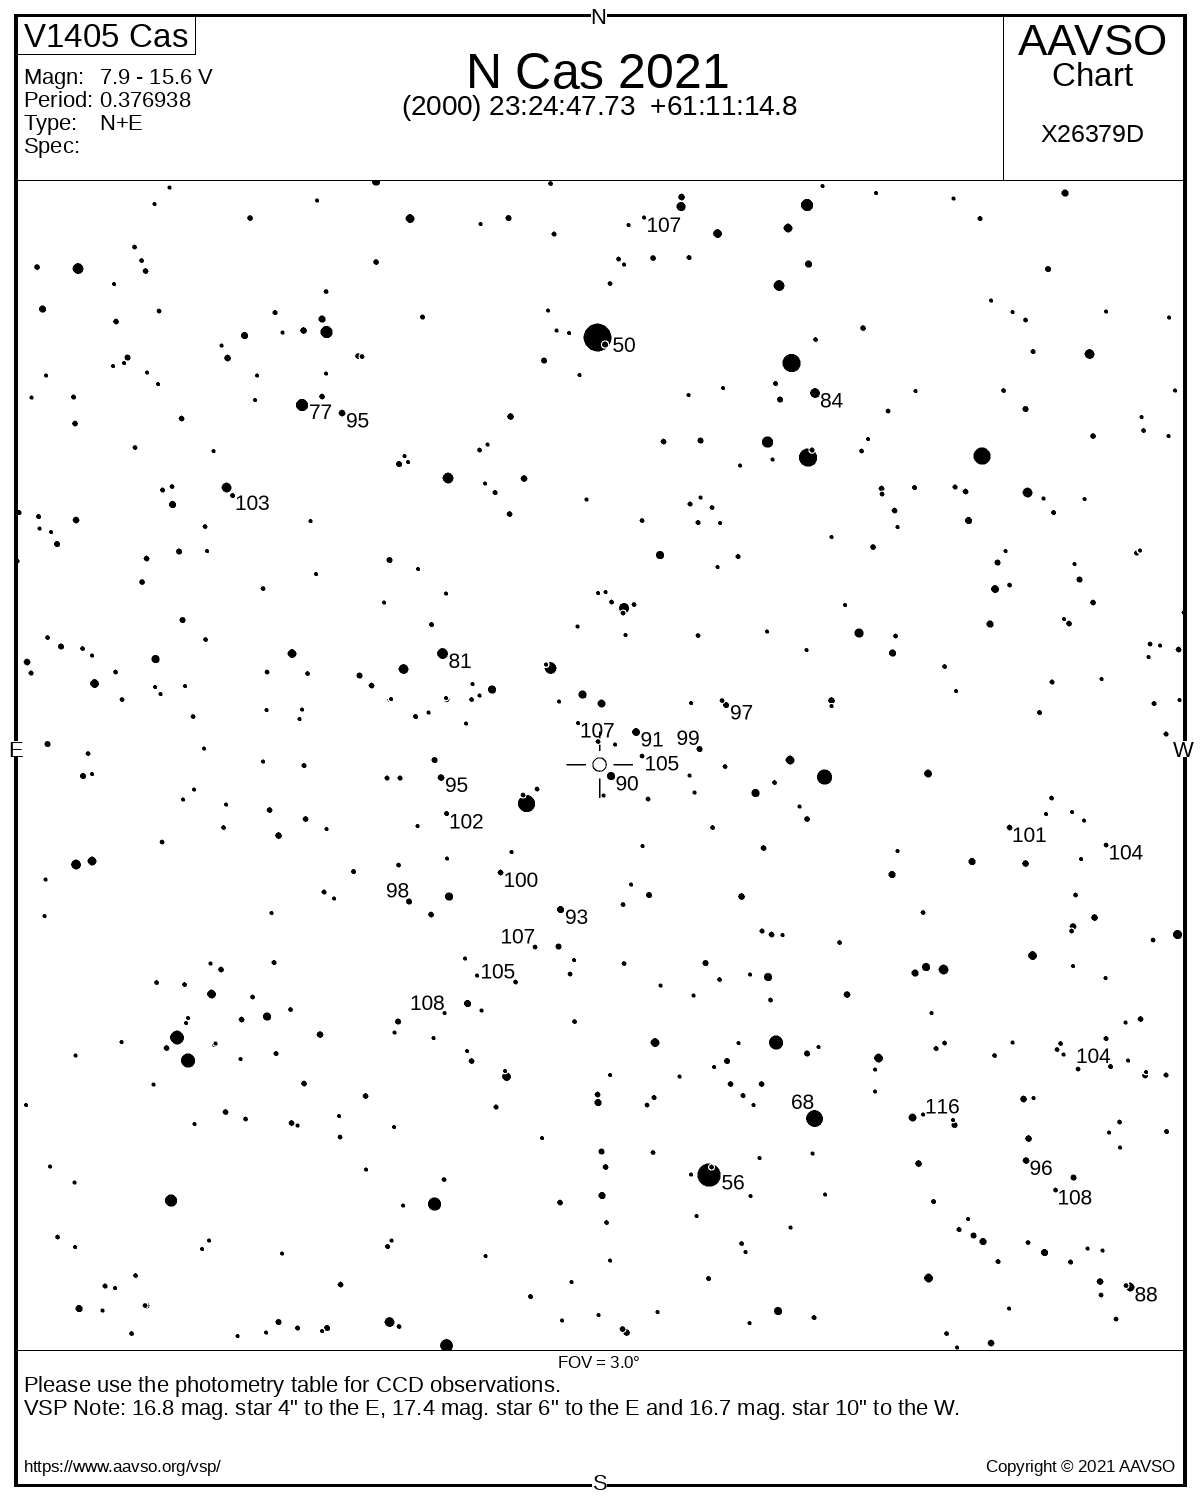 Mapka AAVSO o polu widzenia 3° okolicy nowej V1405 Cas. Gwiazda zmienna jest oznaczona otwartym kółkiem w centrum. U góry widać jasną gwiazdę 4 Cas (jasność 5.0m). Źródło AAVSO